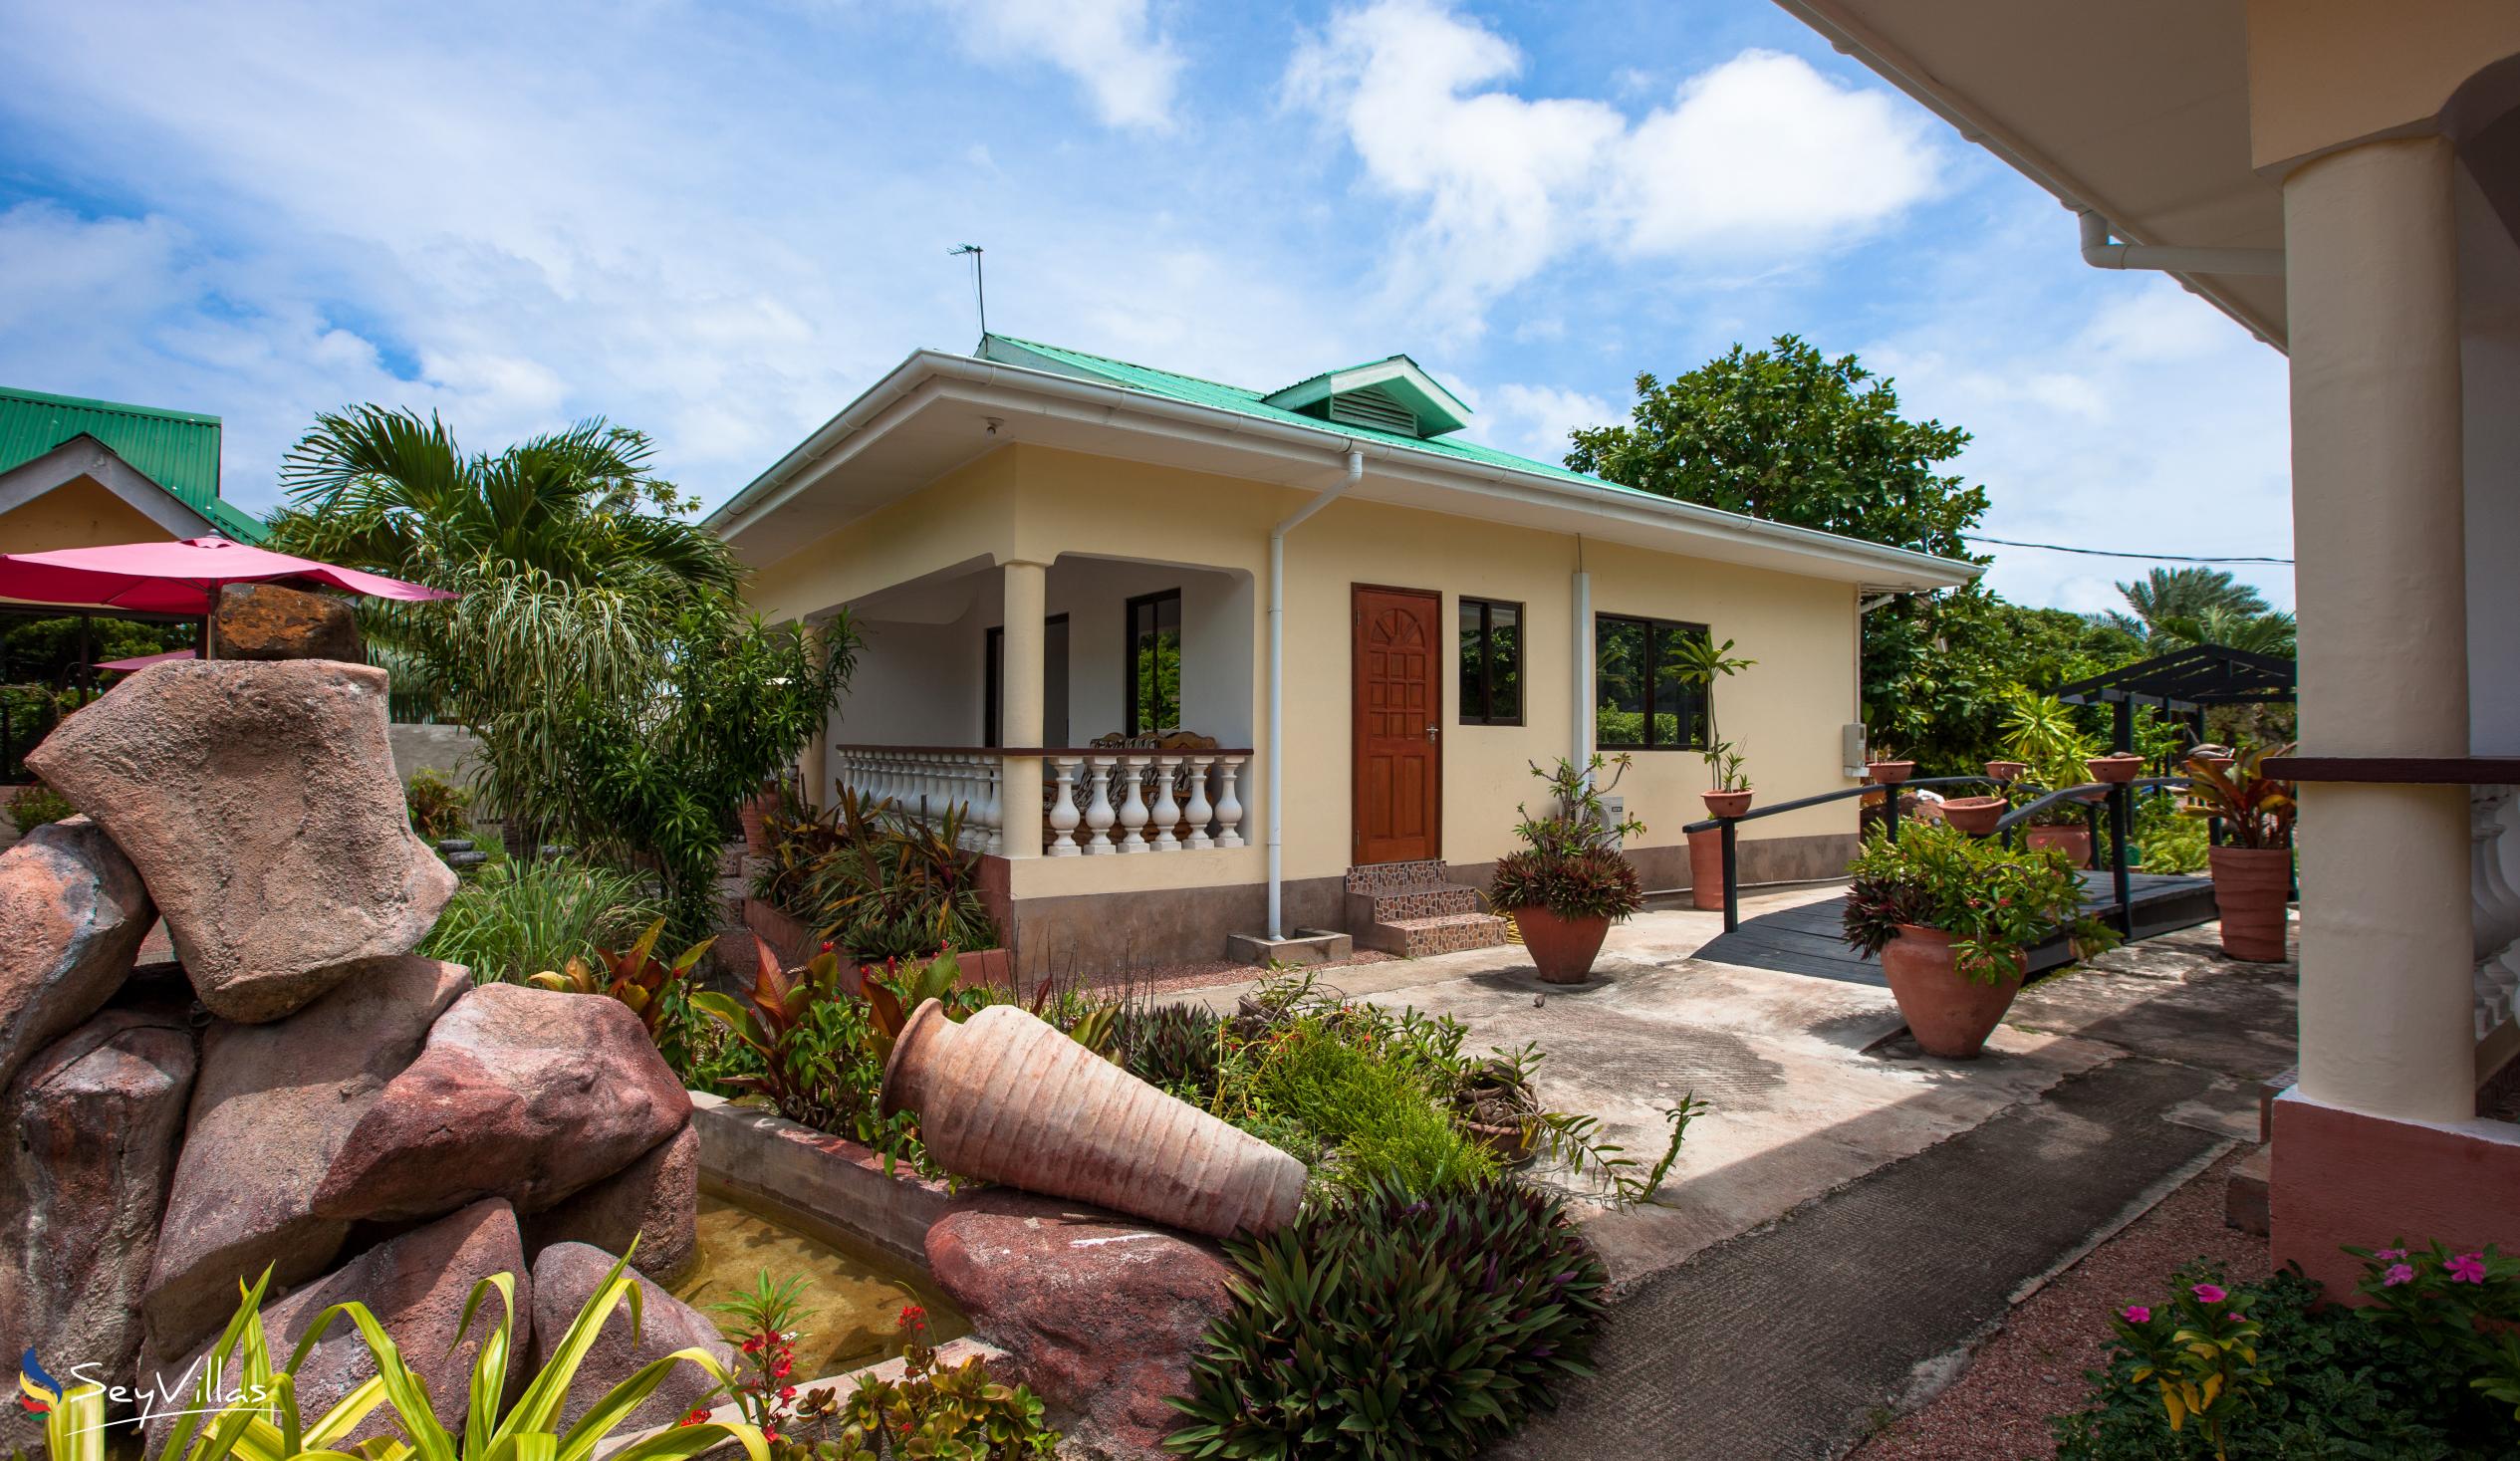 Foto 14: Orchid Self Catering Apartment - Aussenbereich - La Digue (Seychellen)